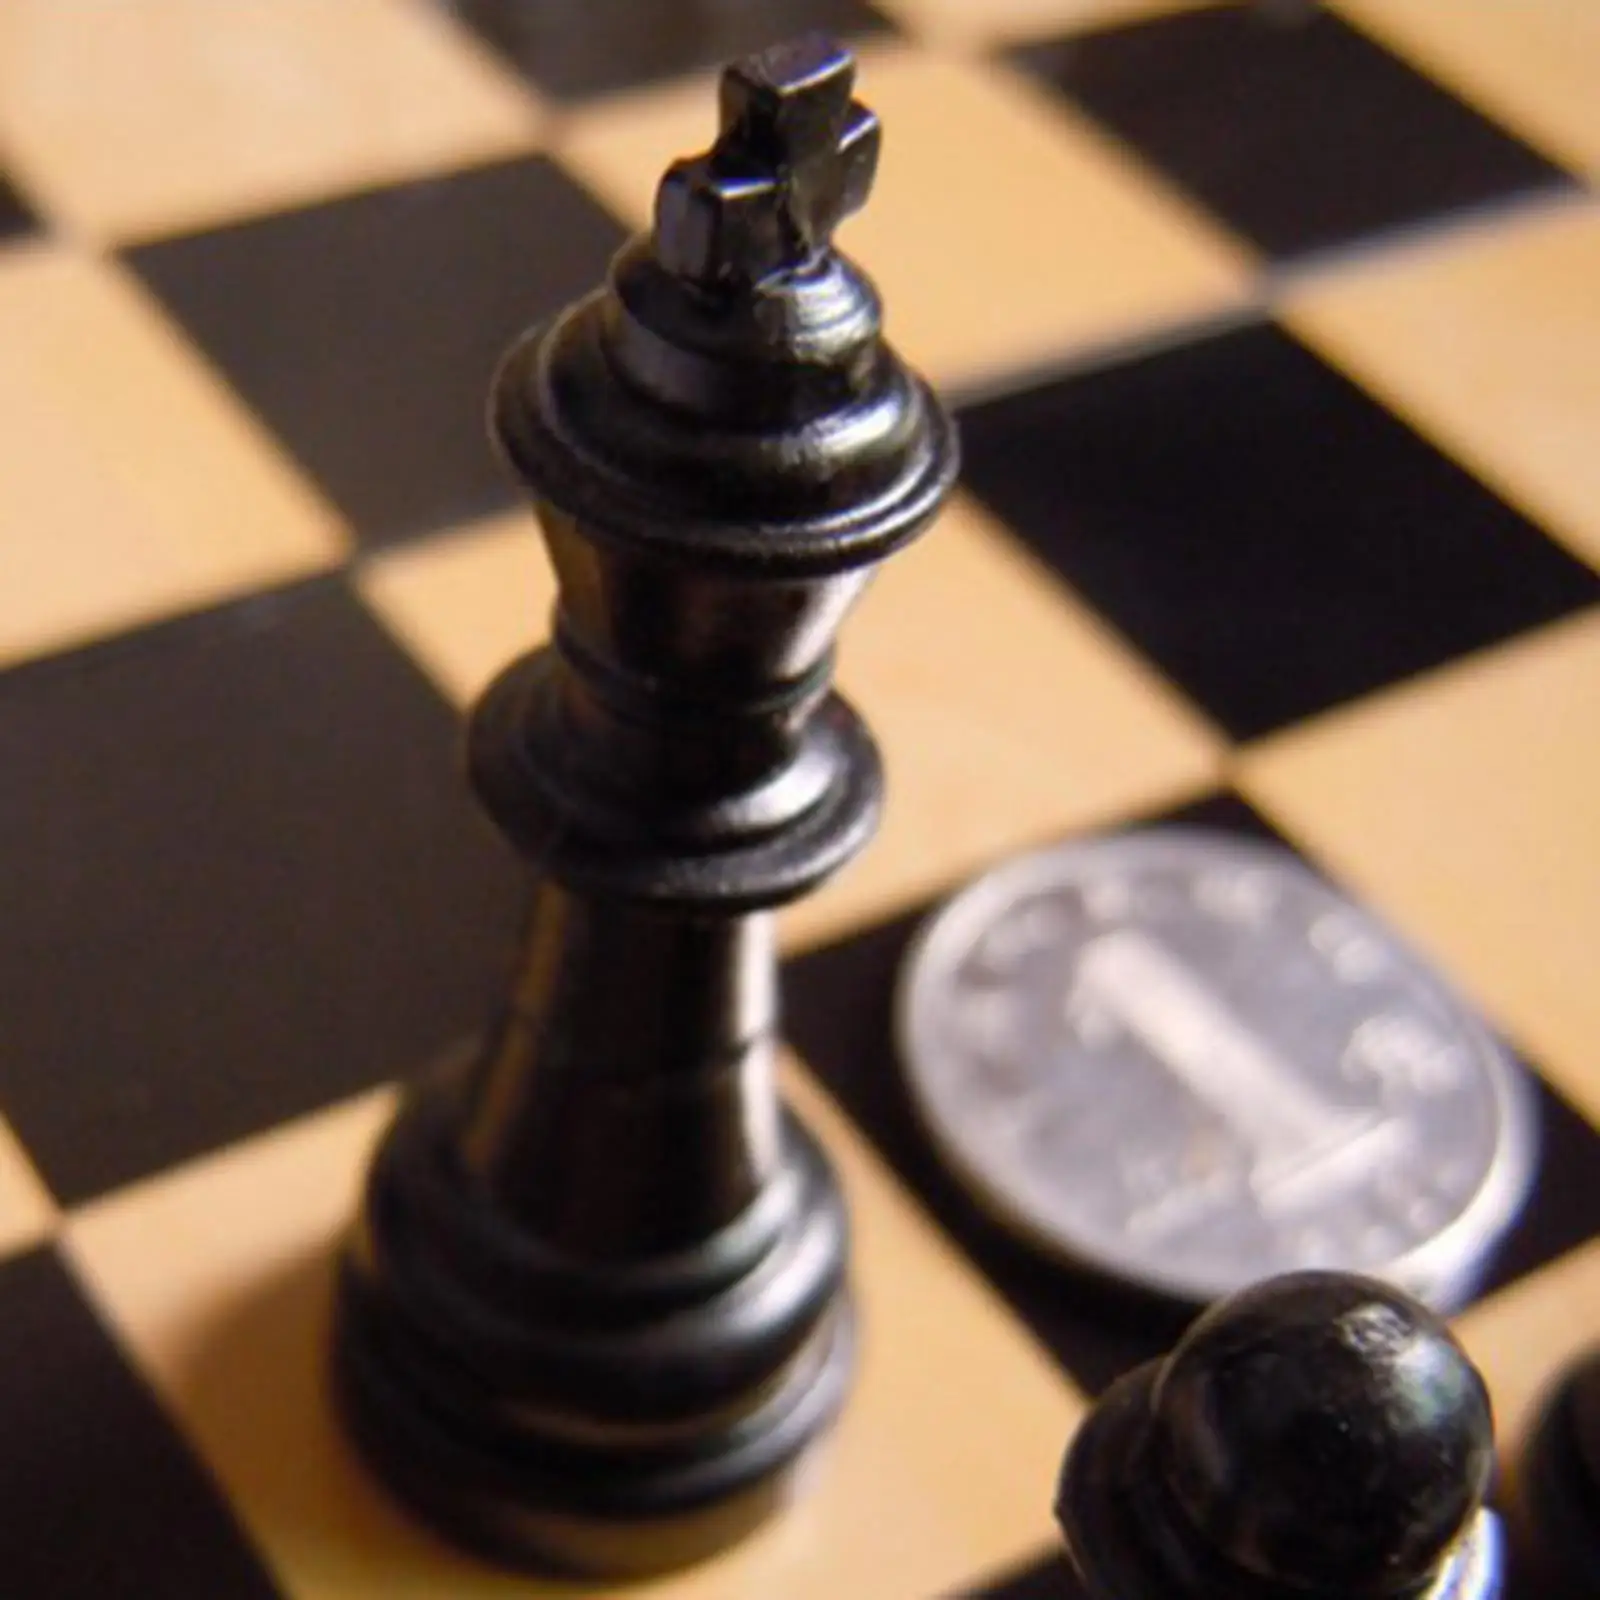 Tabuleiro de dobramento magnético do jogo de xadrez para crianças